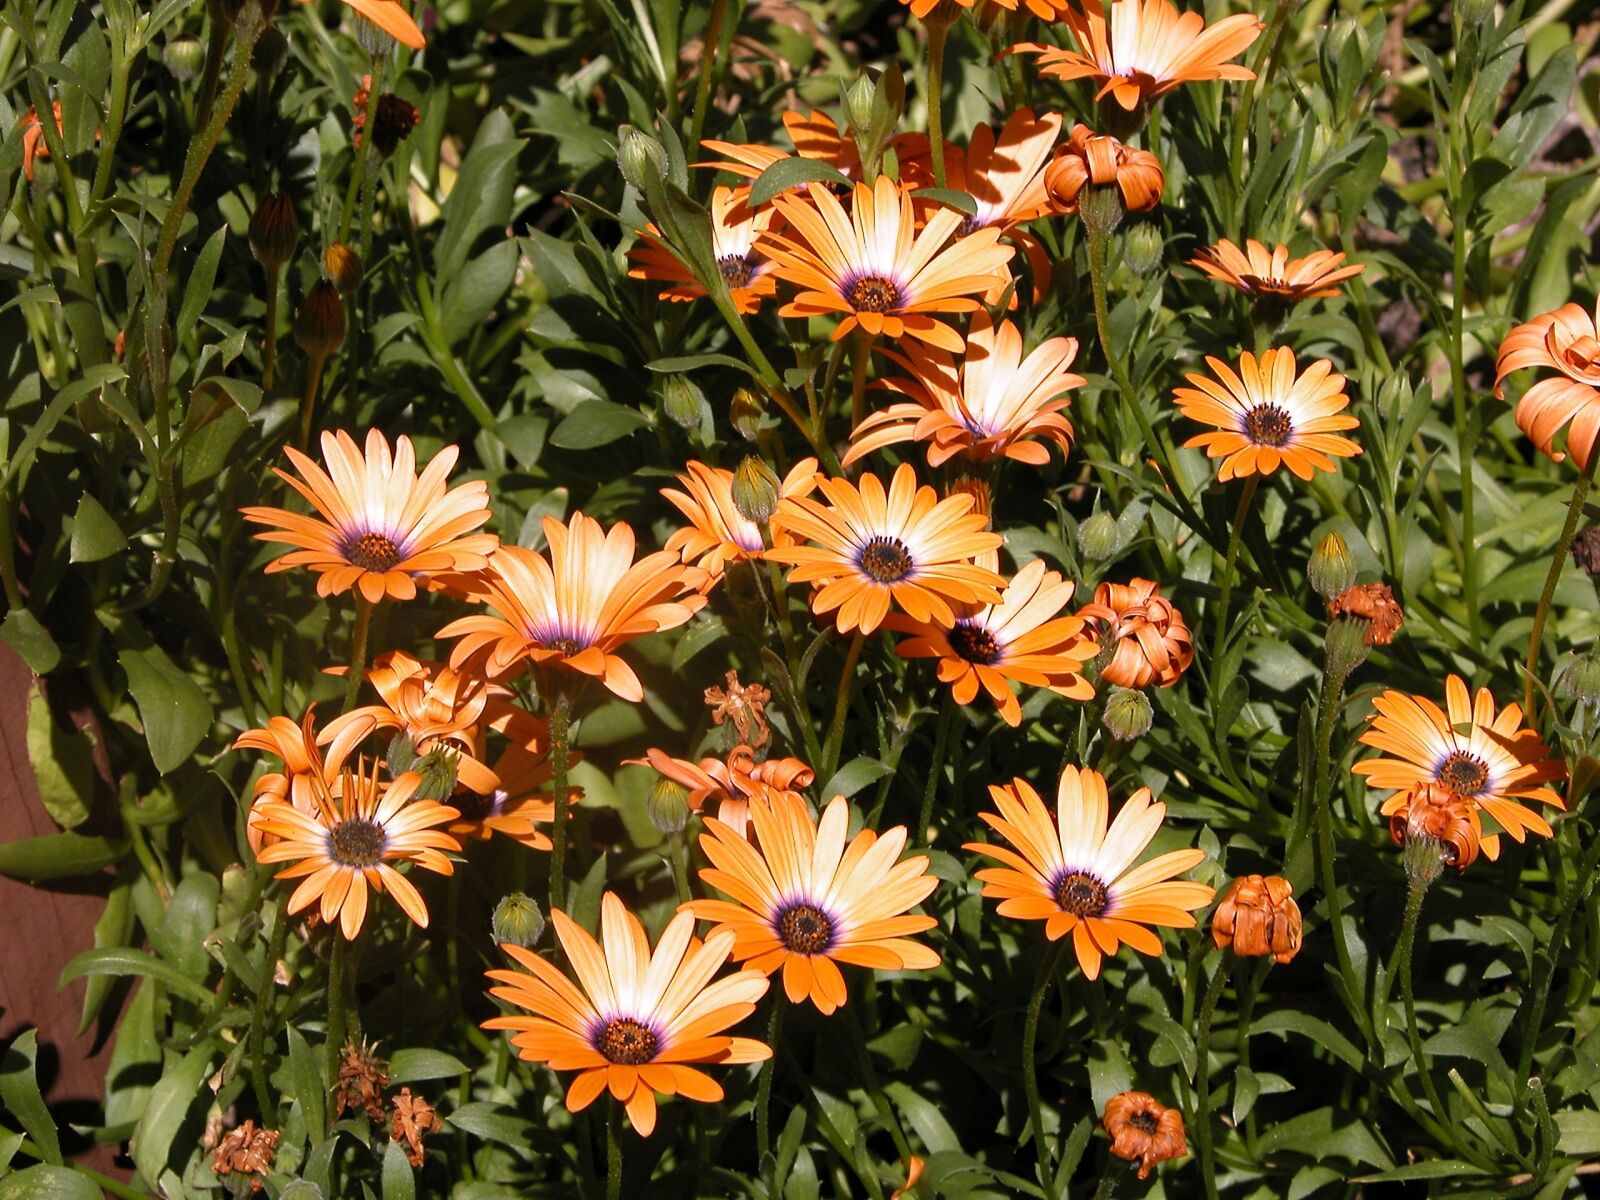 Nikon E5700 sample photo. Flower, summer, garden photography